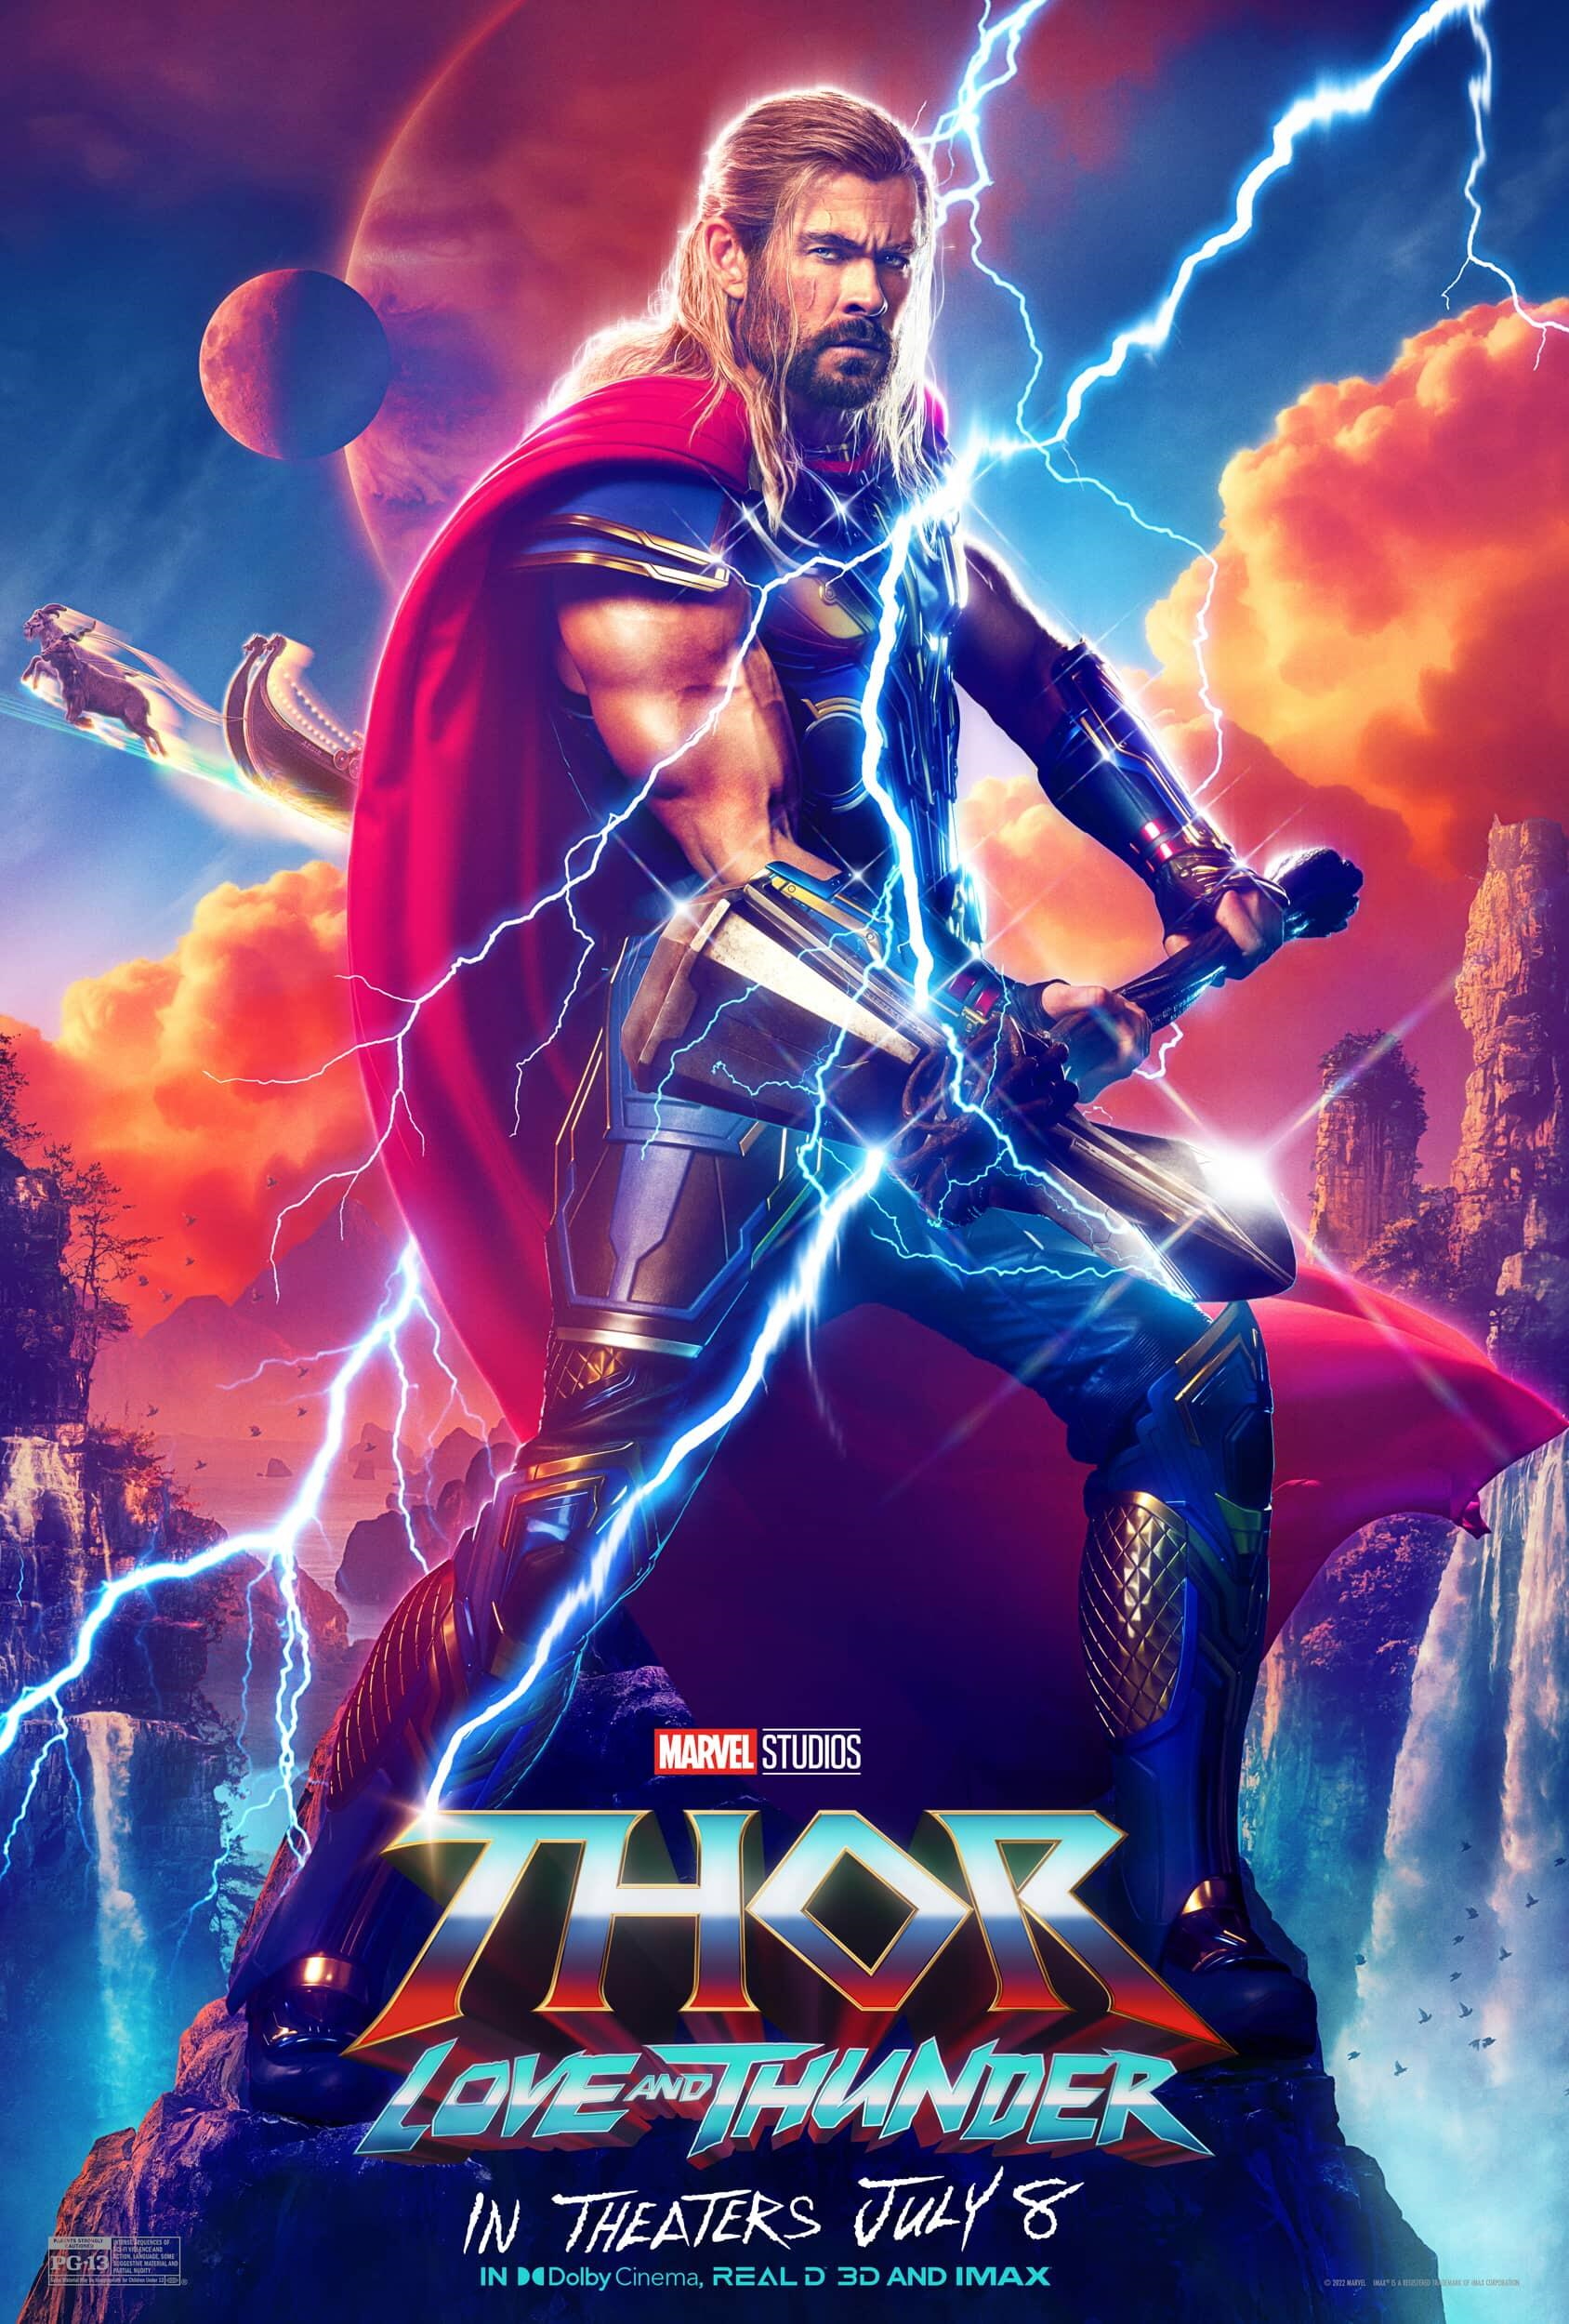 Novos visuais no elenco de Thor: Ragnarok - Notícias de cinema - filmSPOT